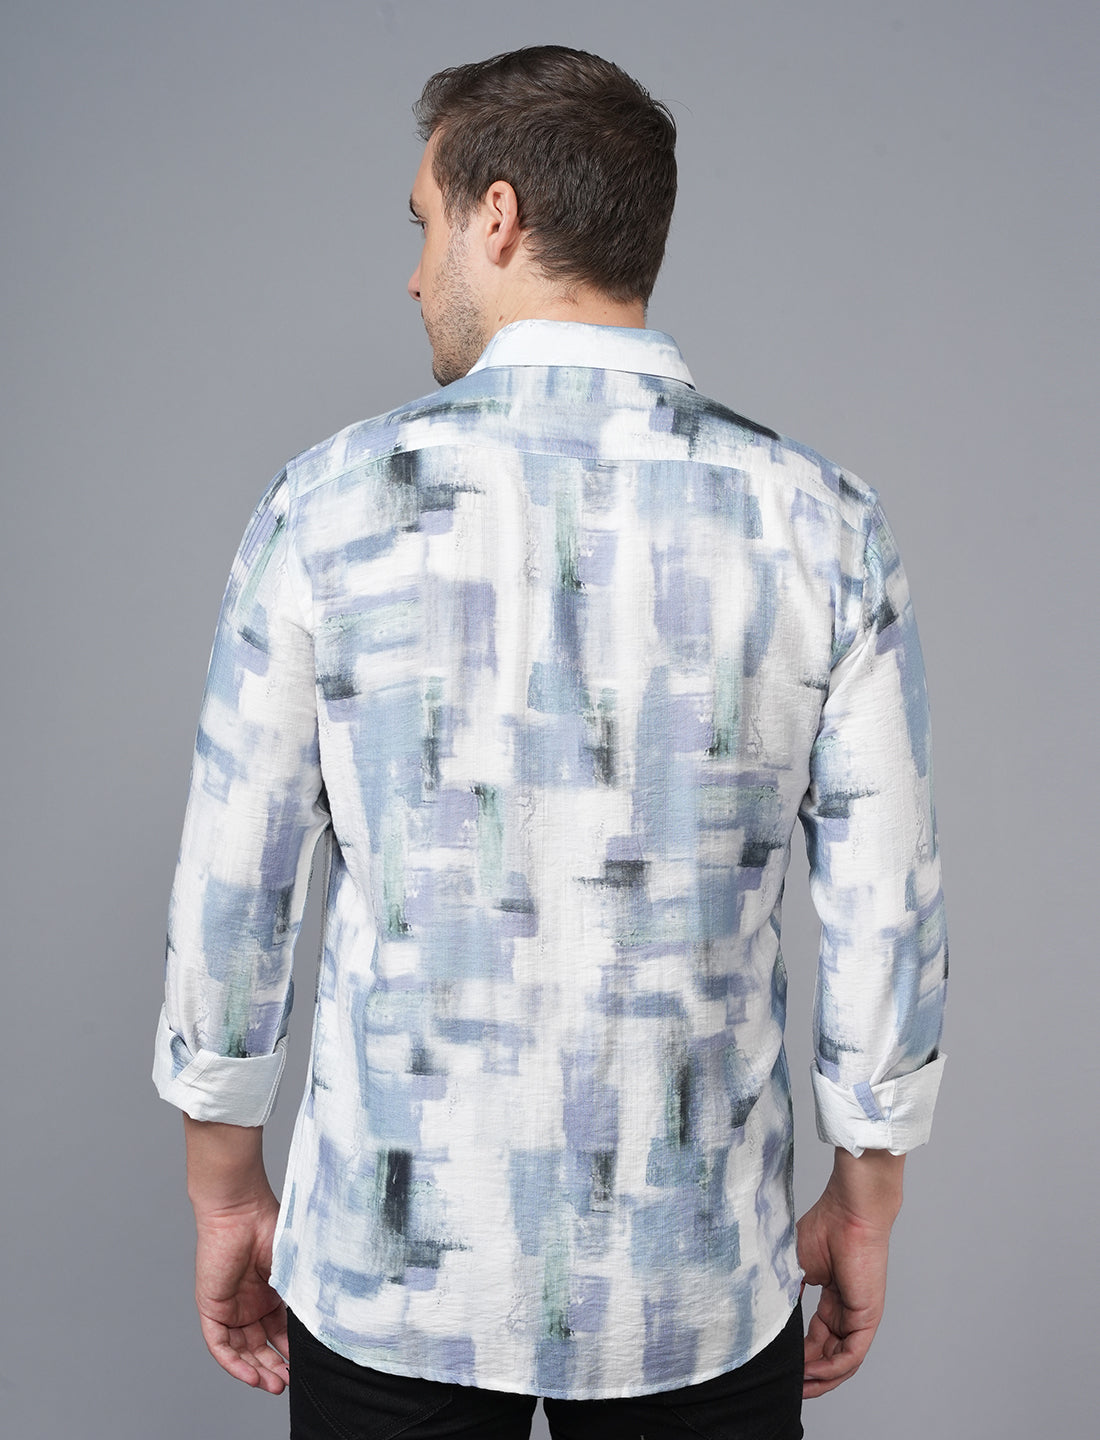 Buy Blue White Designed Printed Shirt for men Online